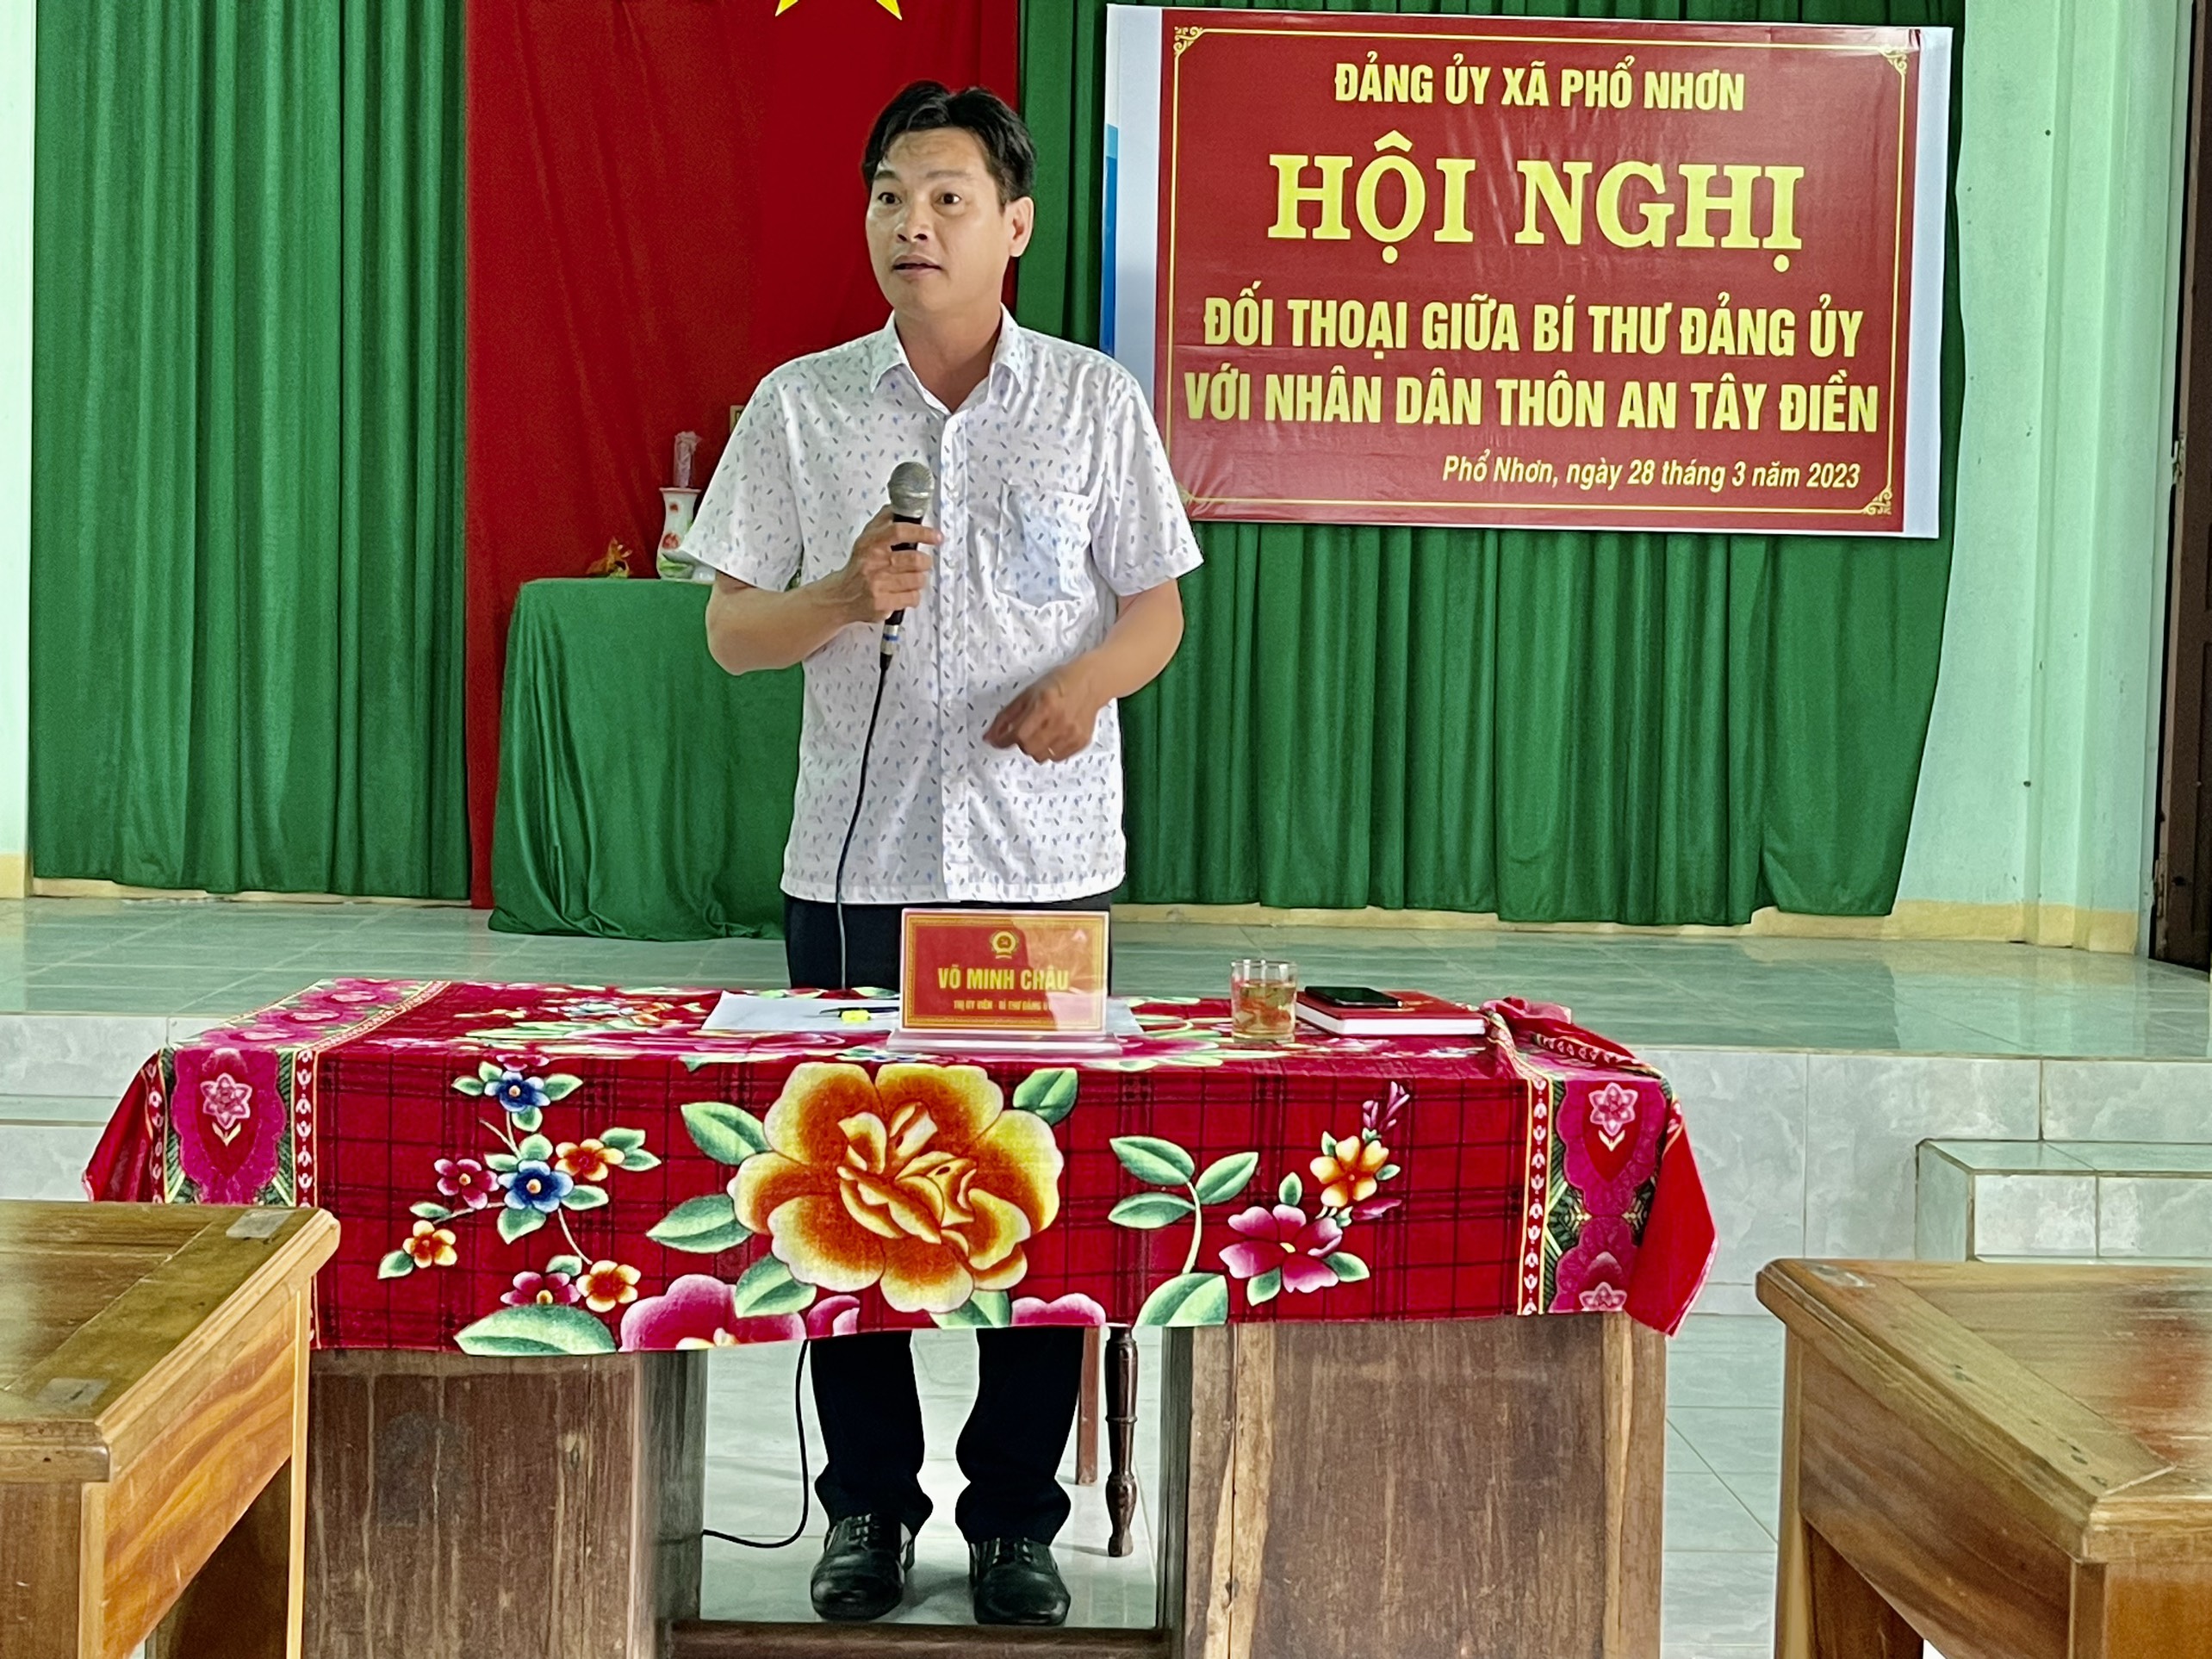 Bí thư Đảng ủy xã Phổ Nhơn tiếp xúc đối thoại với nhân dân thôn An Tây Điền